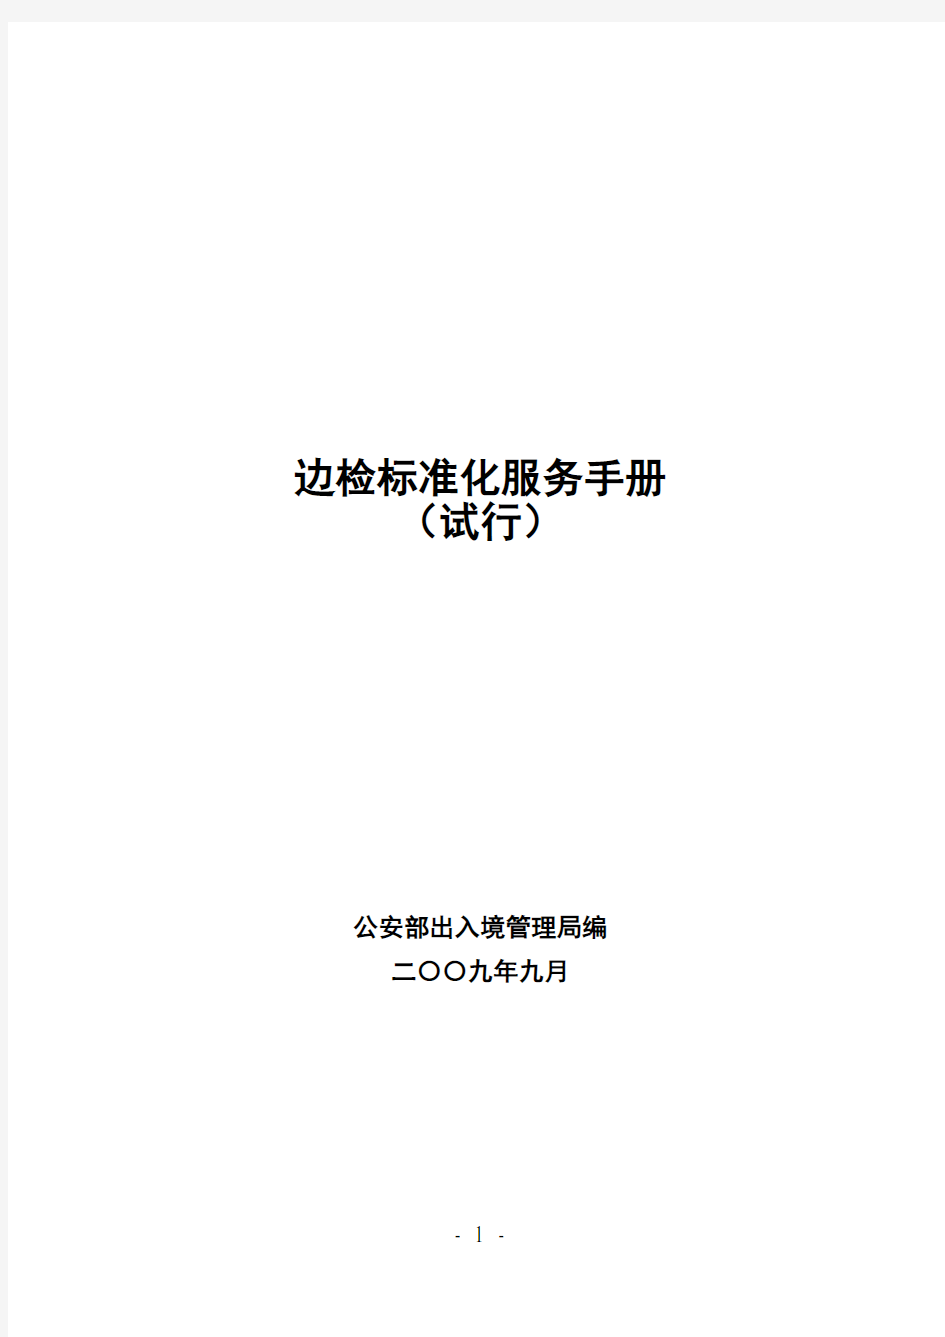 出入境管理边检标准化服务手册(试行)( 302页)手册